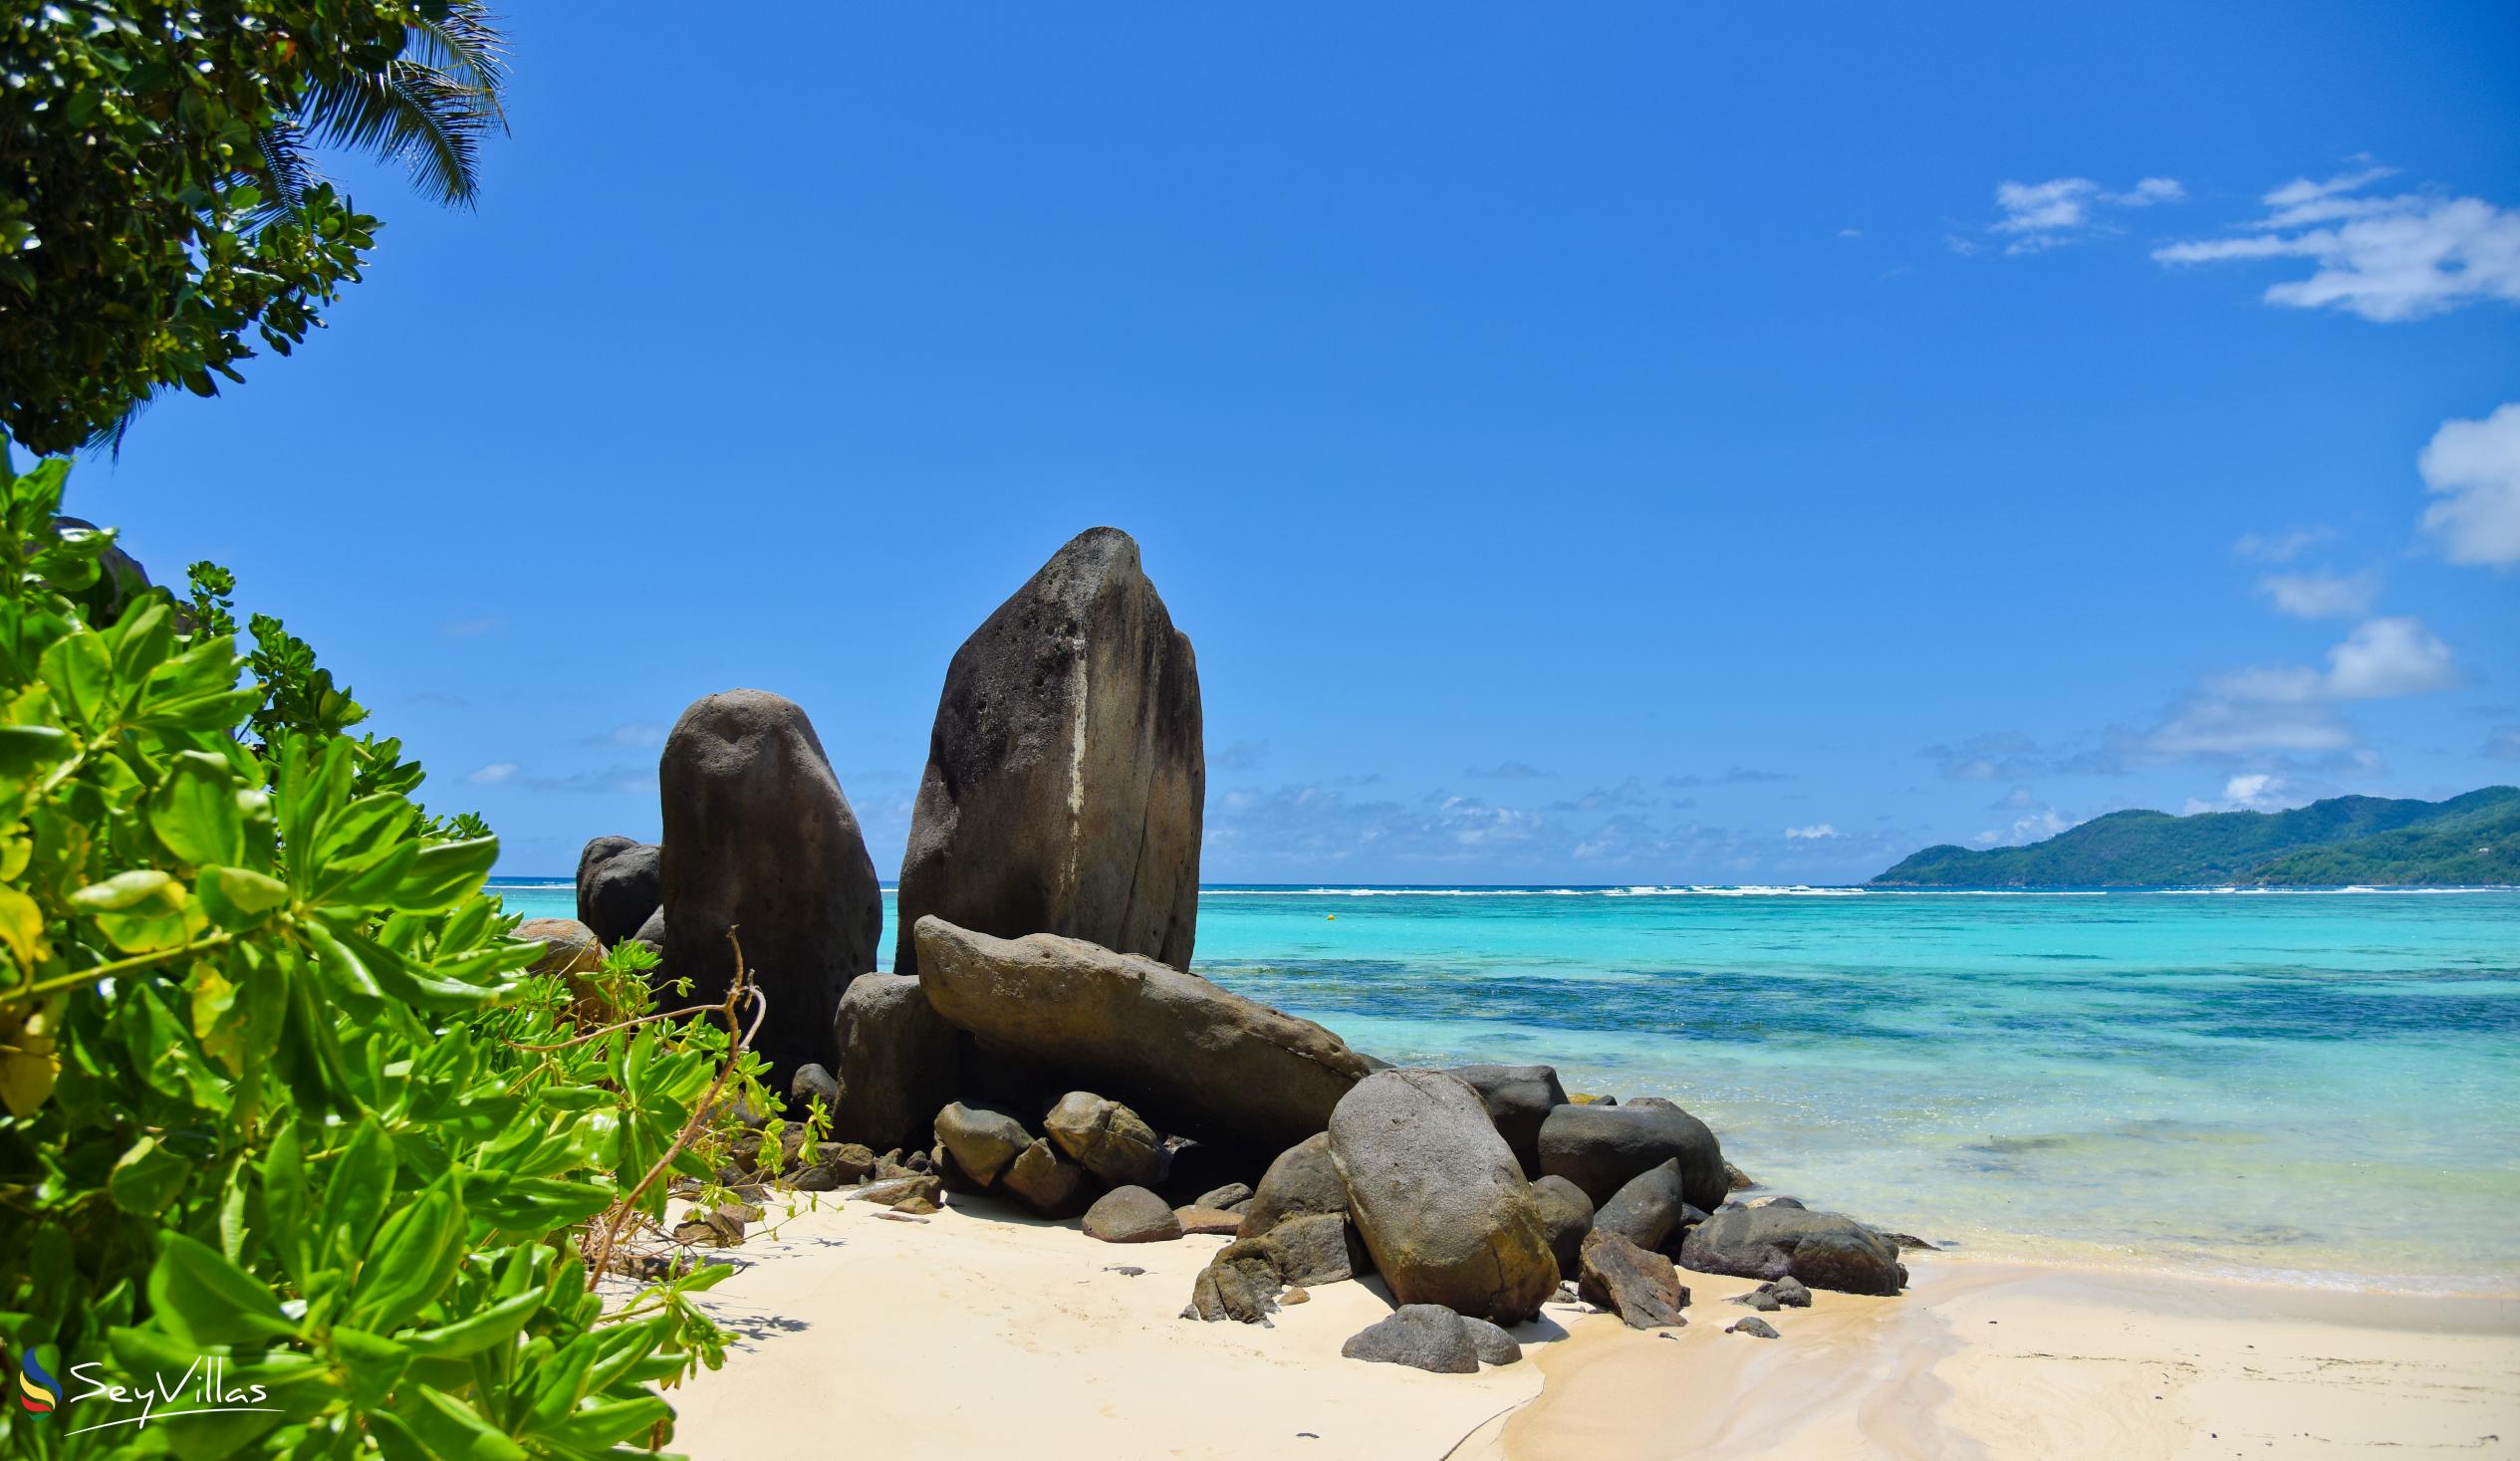 Photo 20: Fairyland Beach (Relax Beach) - Mahé (Seychelles)